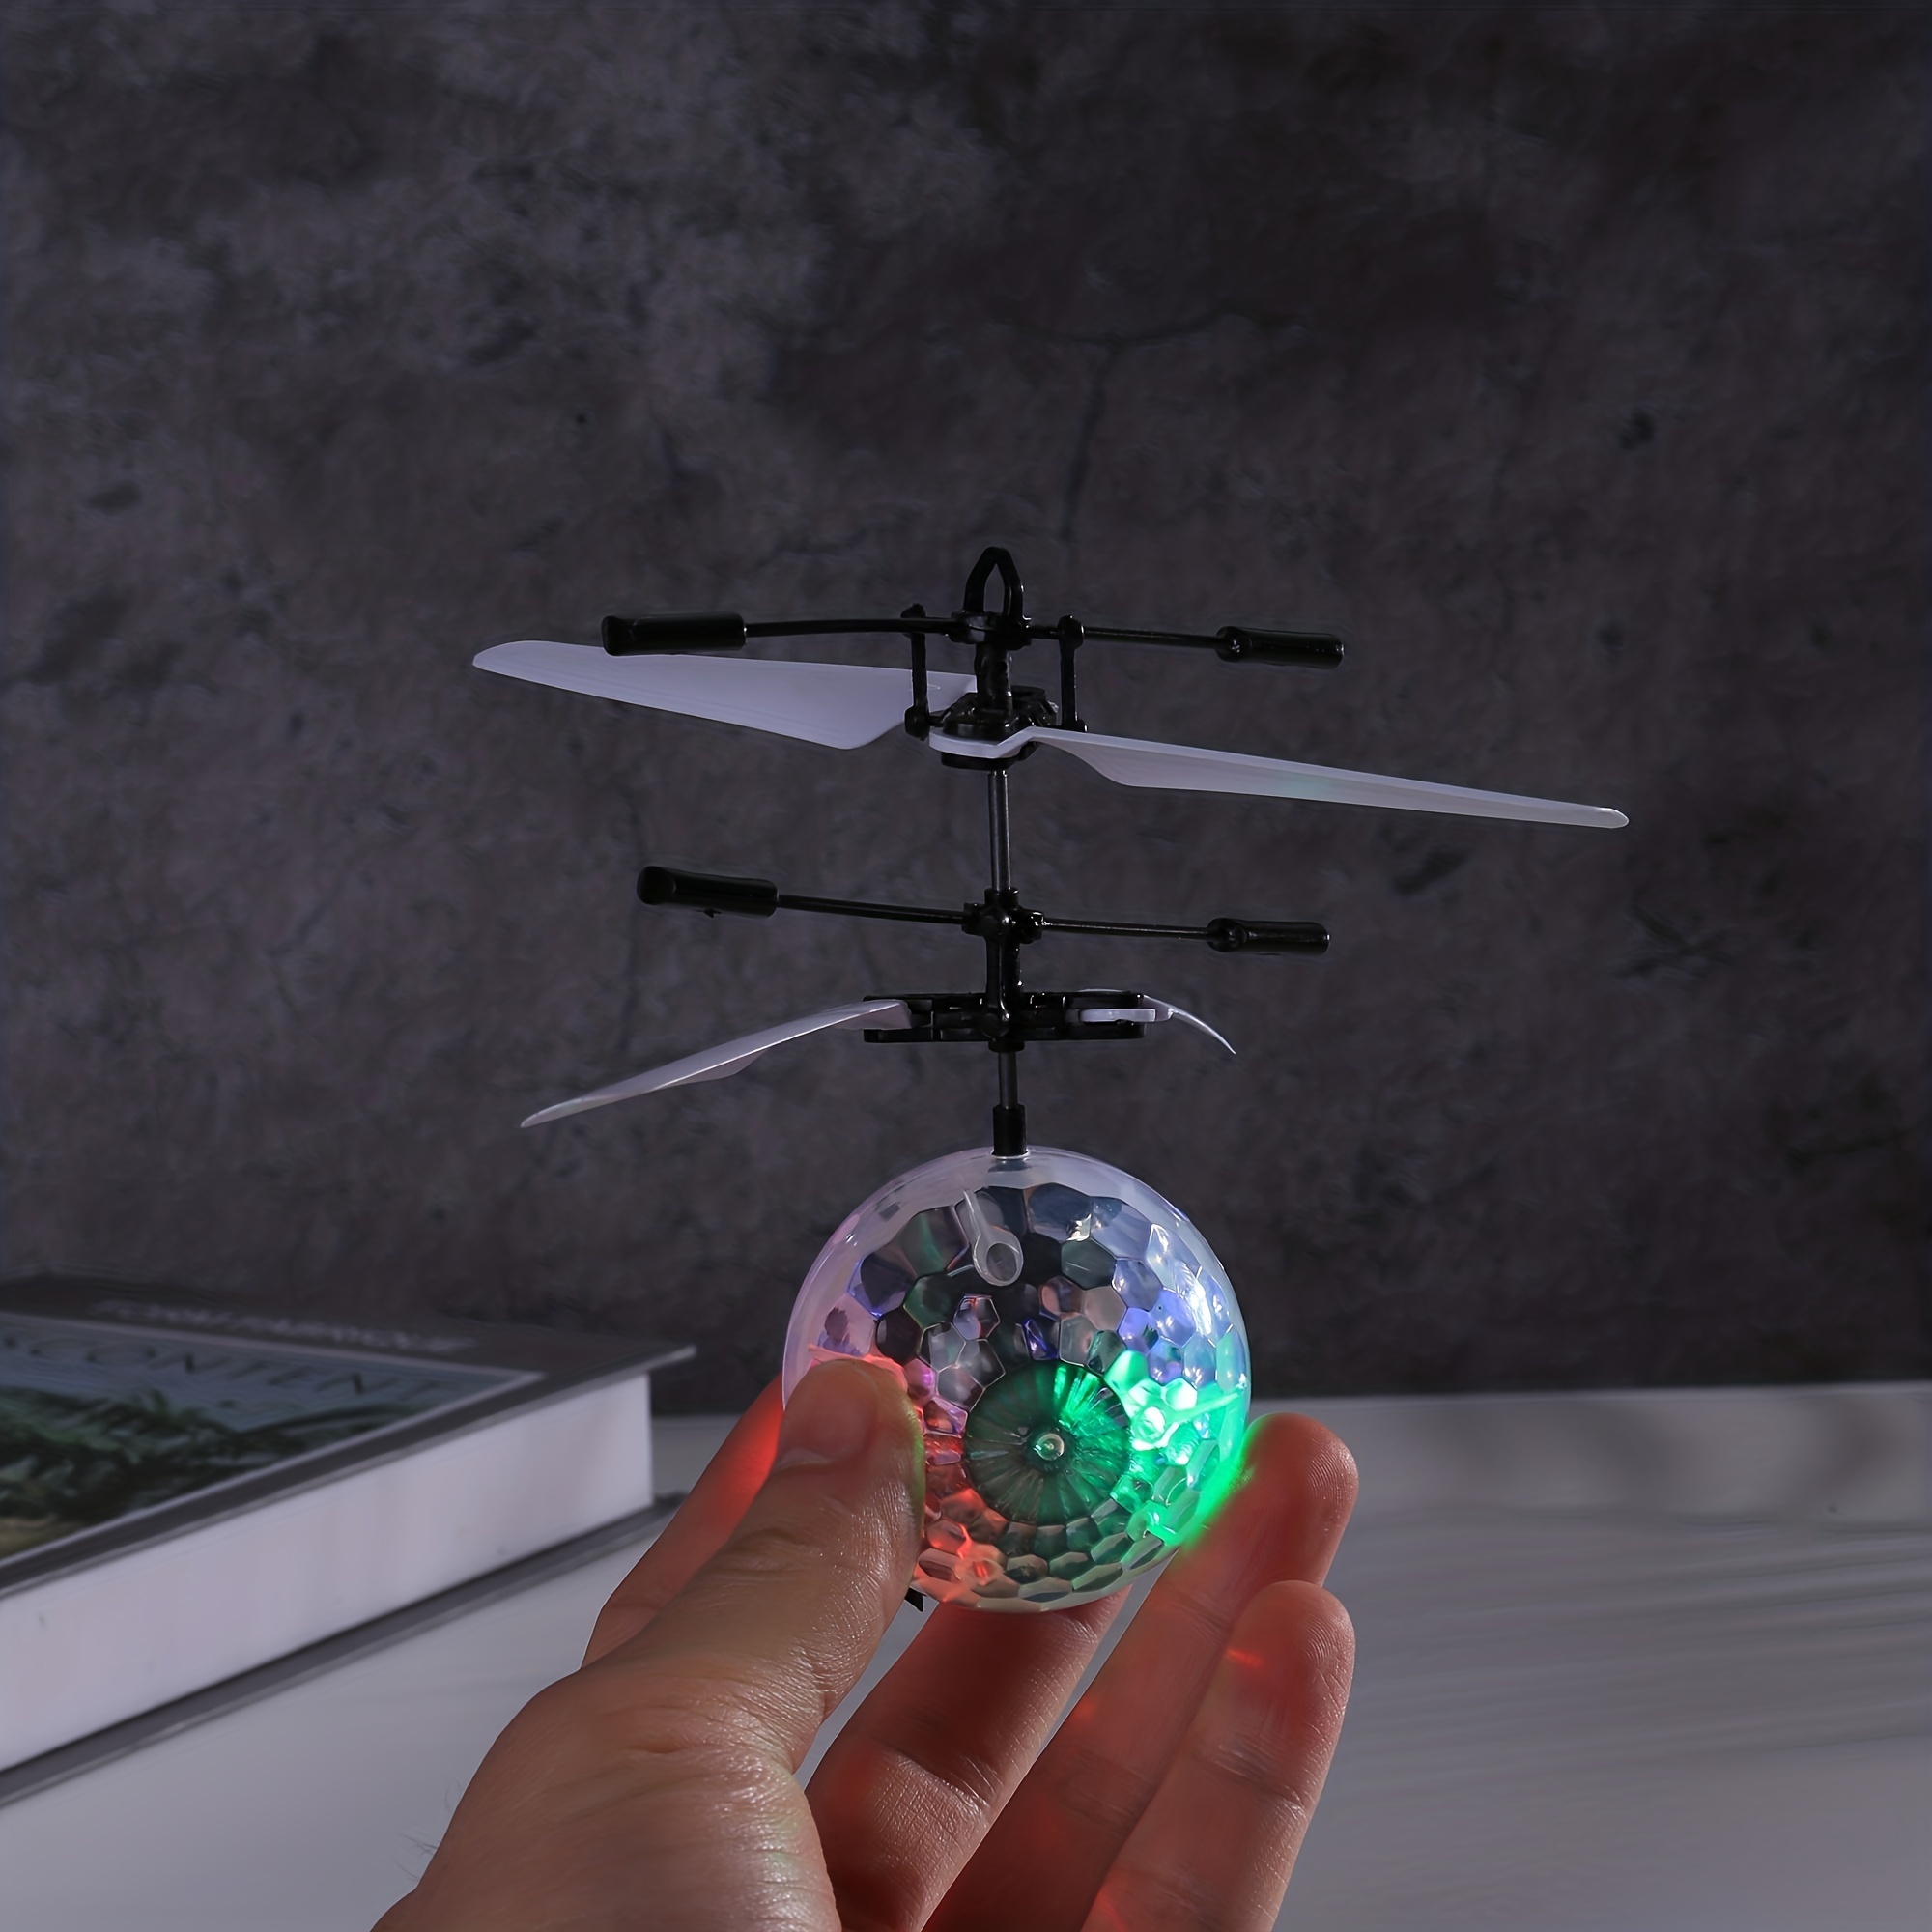 Juguete de bola voladora mágica - Drone RC de inducción infrarroja